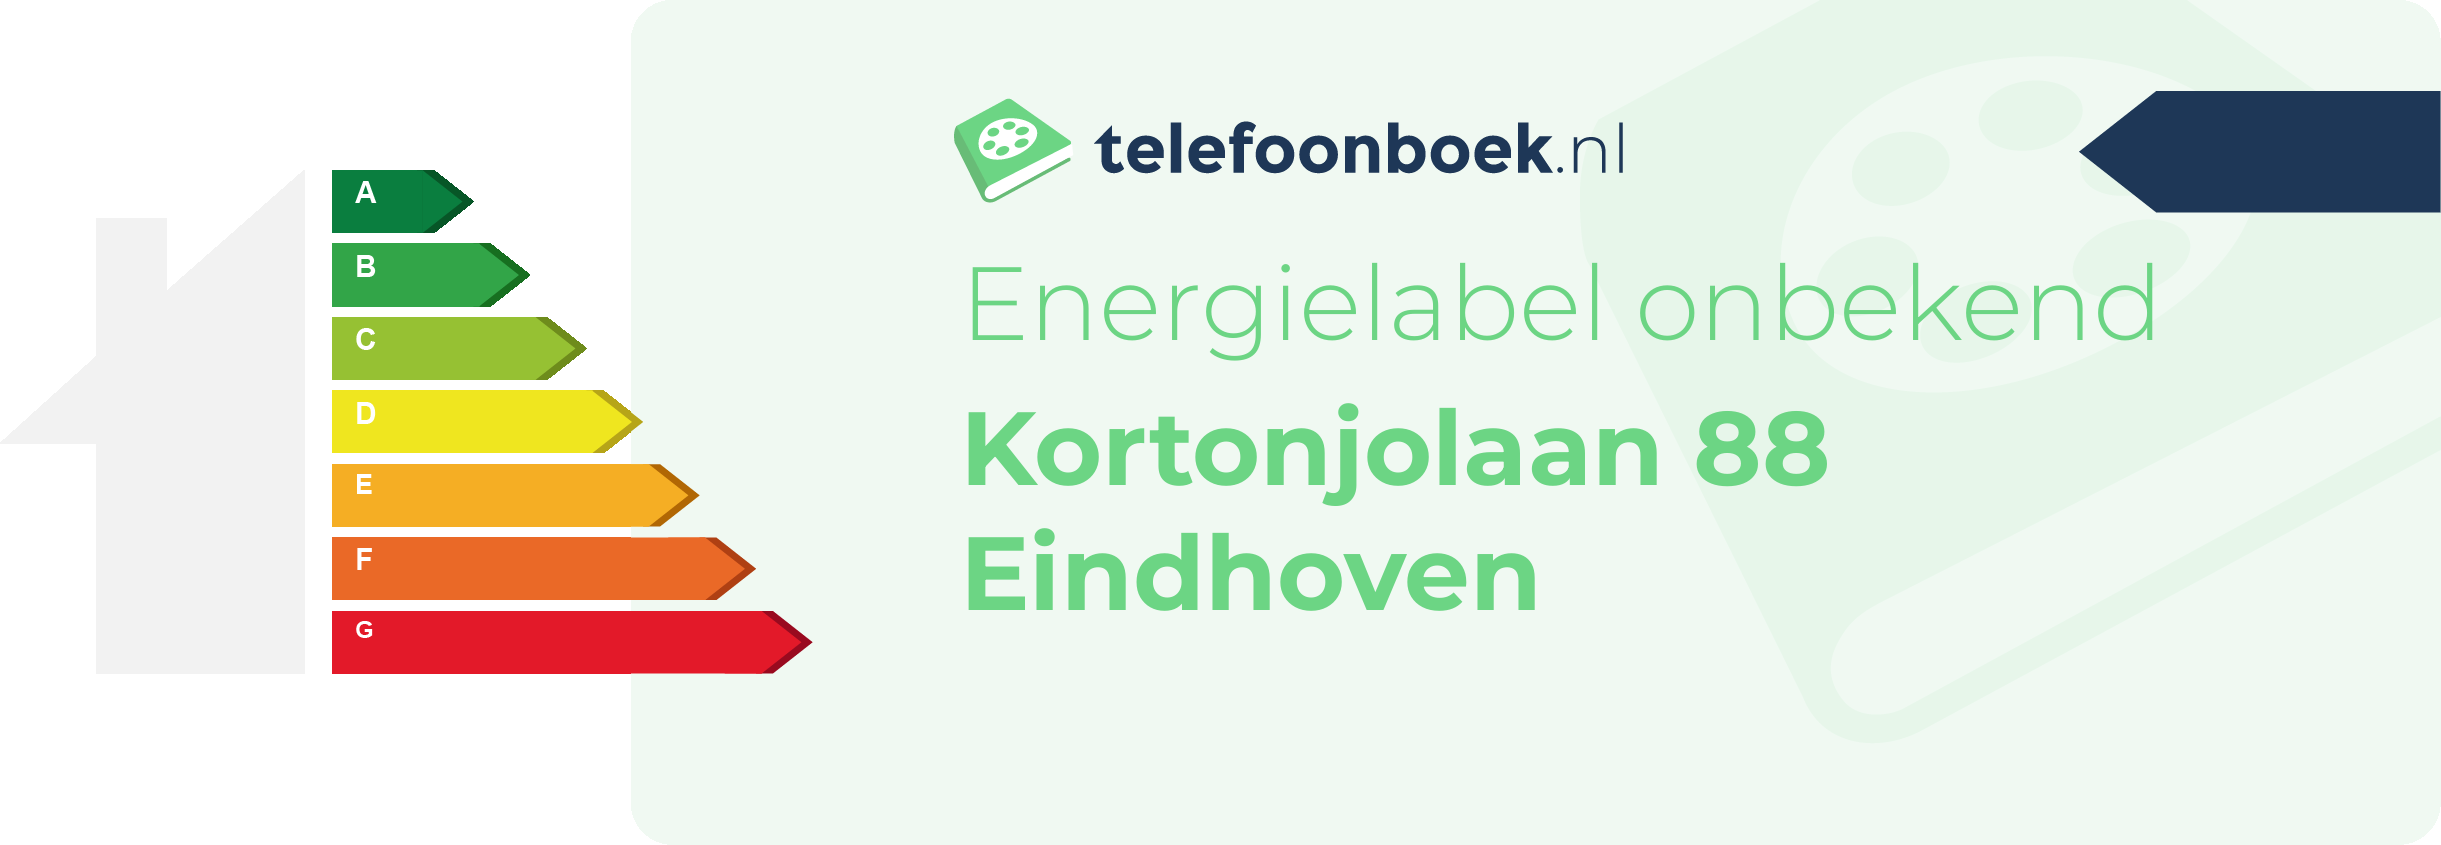 Energielabel Kortonjolaan 88 Eindhoven